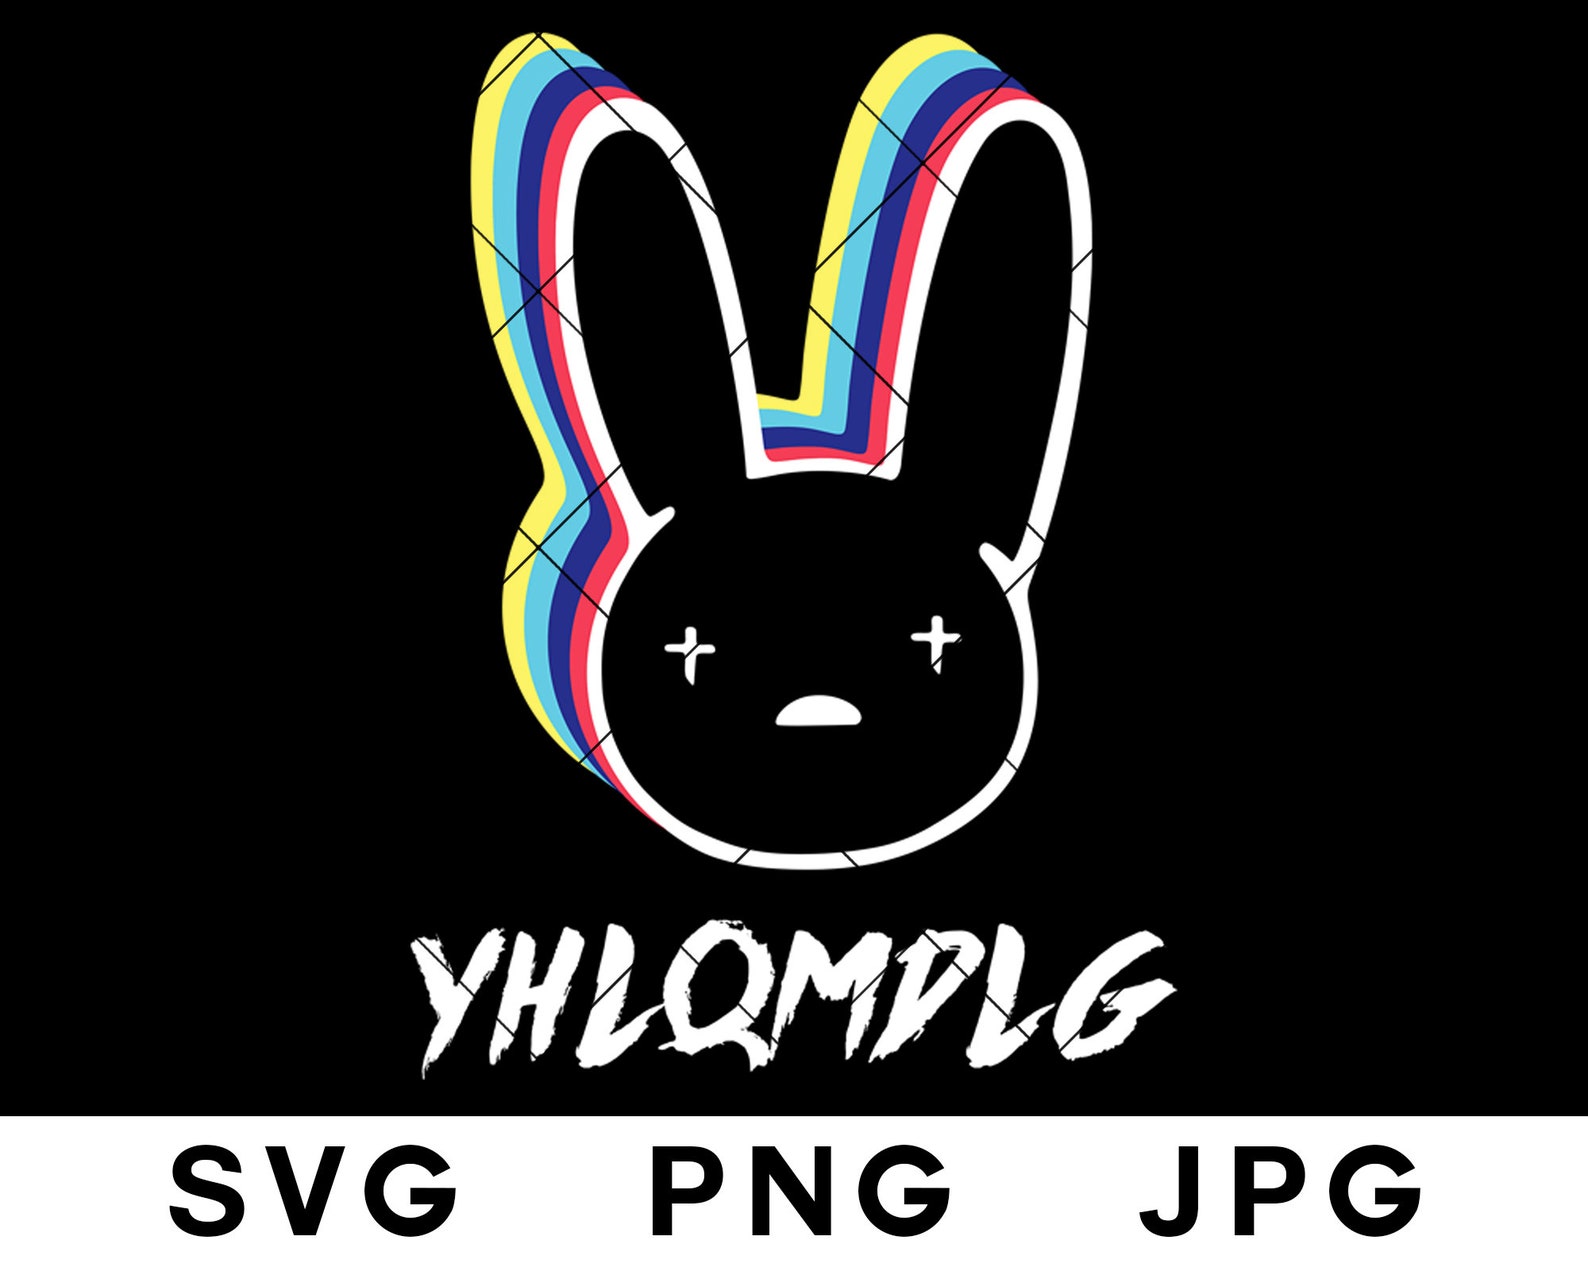 Bad Bunny SVG Bad Bunny Logo Music Album YHLQMDLG PNG Vector | Etsy